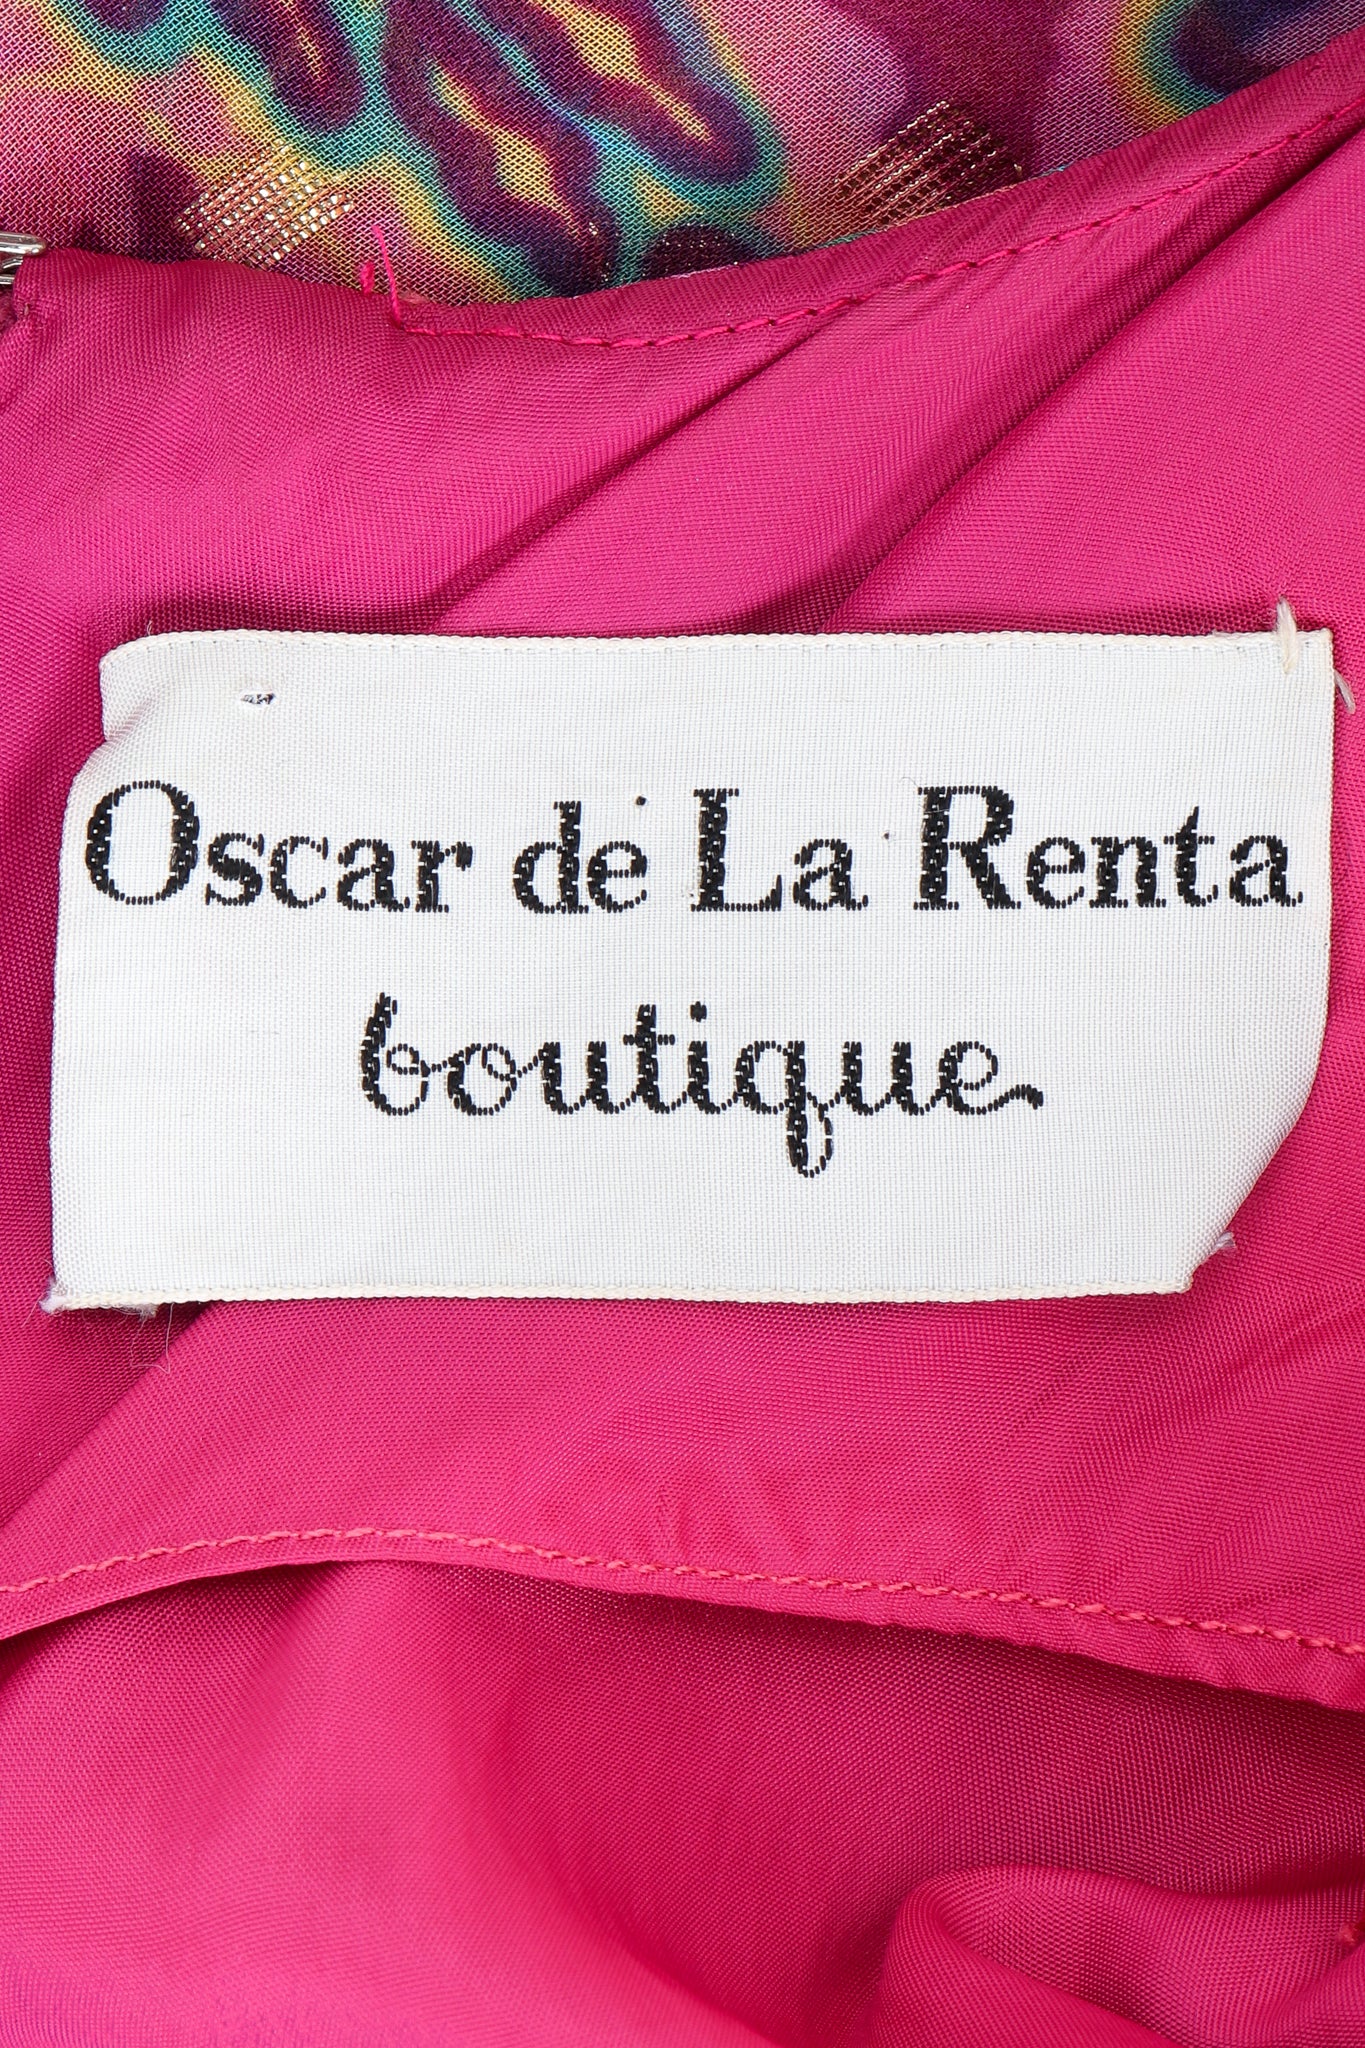 Vintage Oscar de la Renta label on pink lining fabric